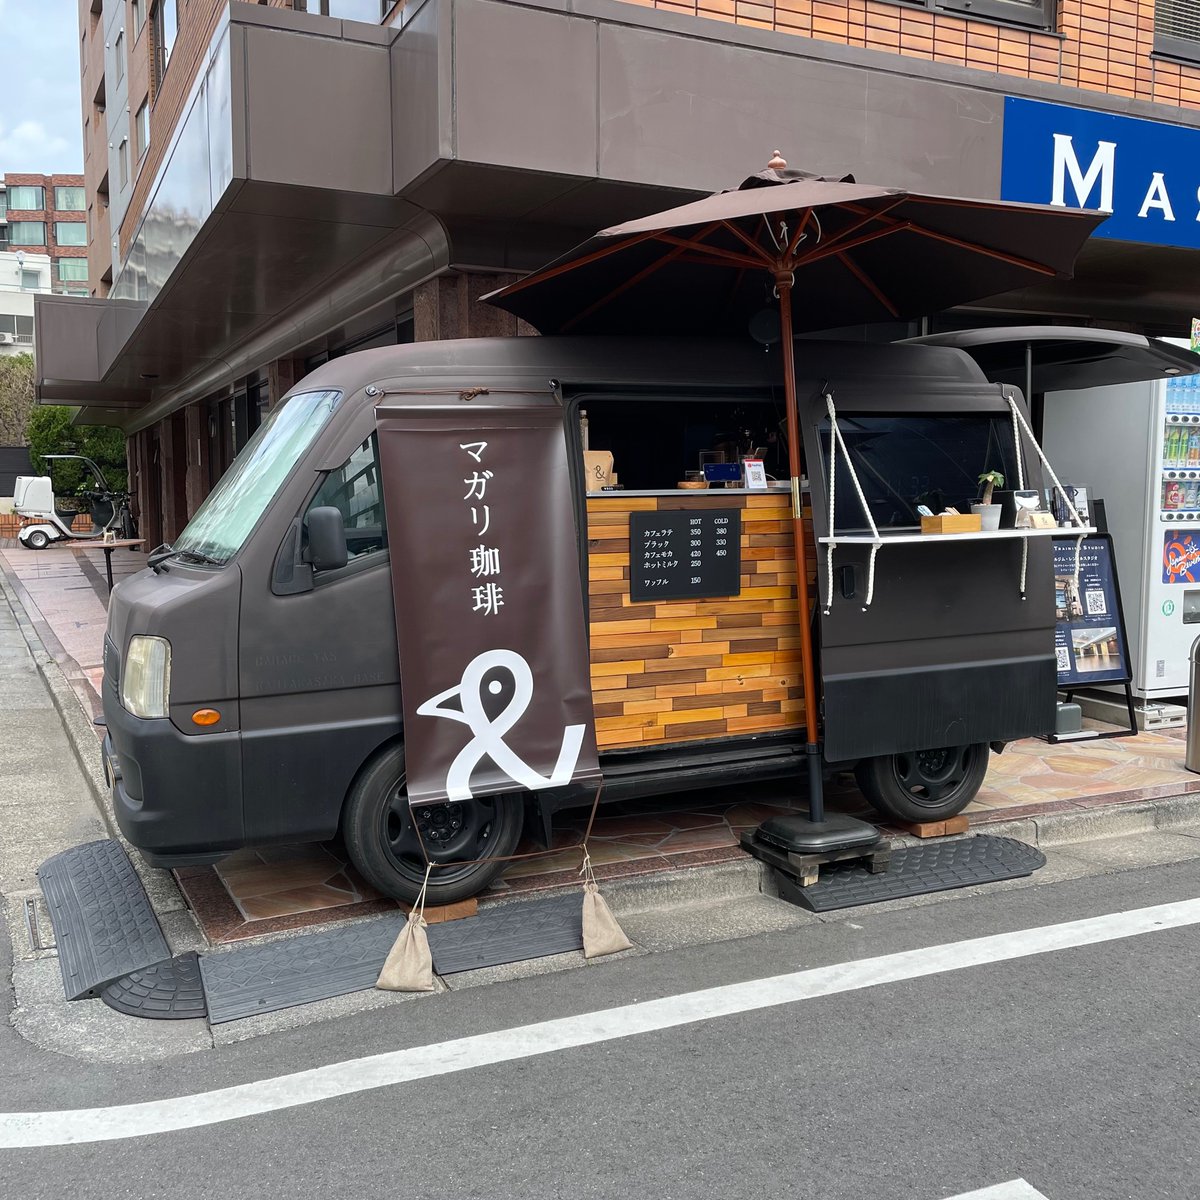 先日見つけたお店。オーストラリア帰りの店主さんが、東京でももっと手軽に（安価に）美味しいコーヒーを楽しんで欲しいと、起業したとのこと。カフェラテ350円。美味しかったので、お近くの方はぜひ。#マガリ珈琲 #高田馬場 